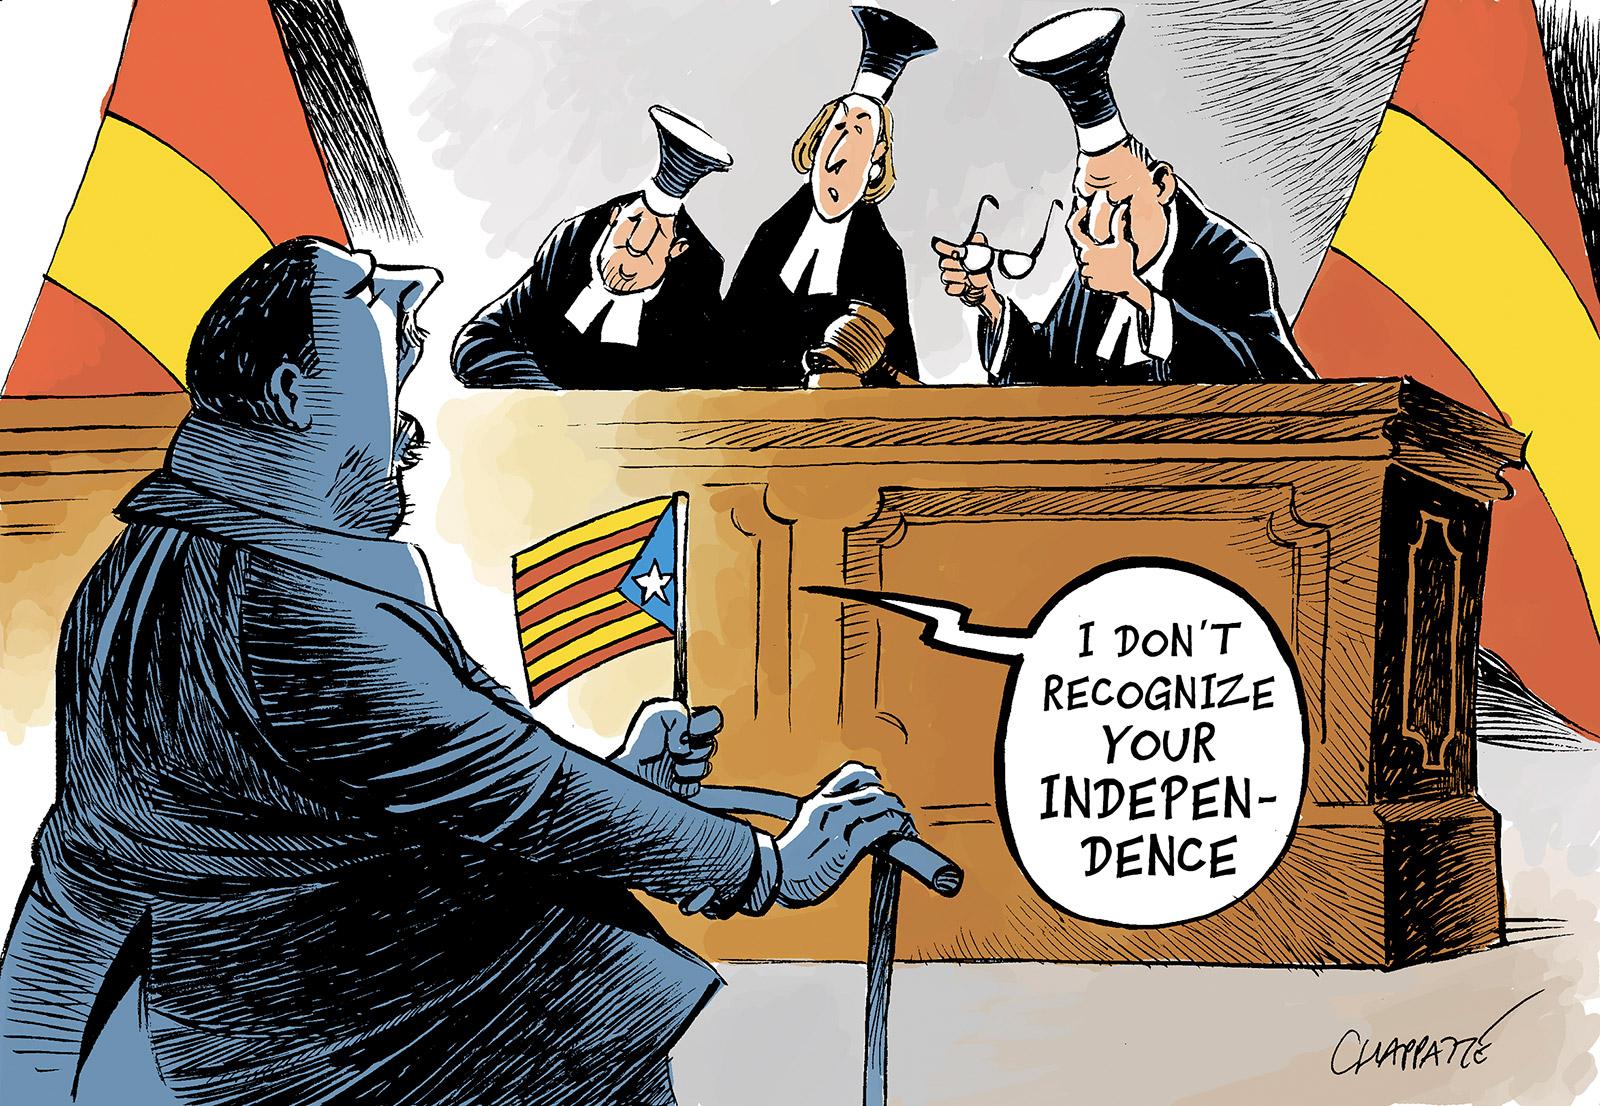 Trial of Catalan separatist leaders